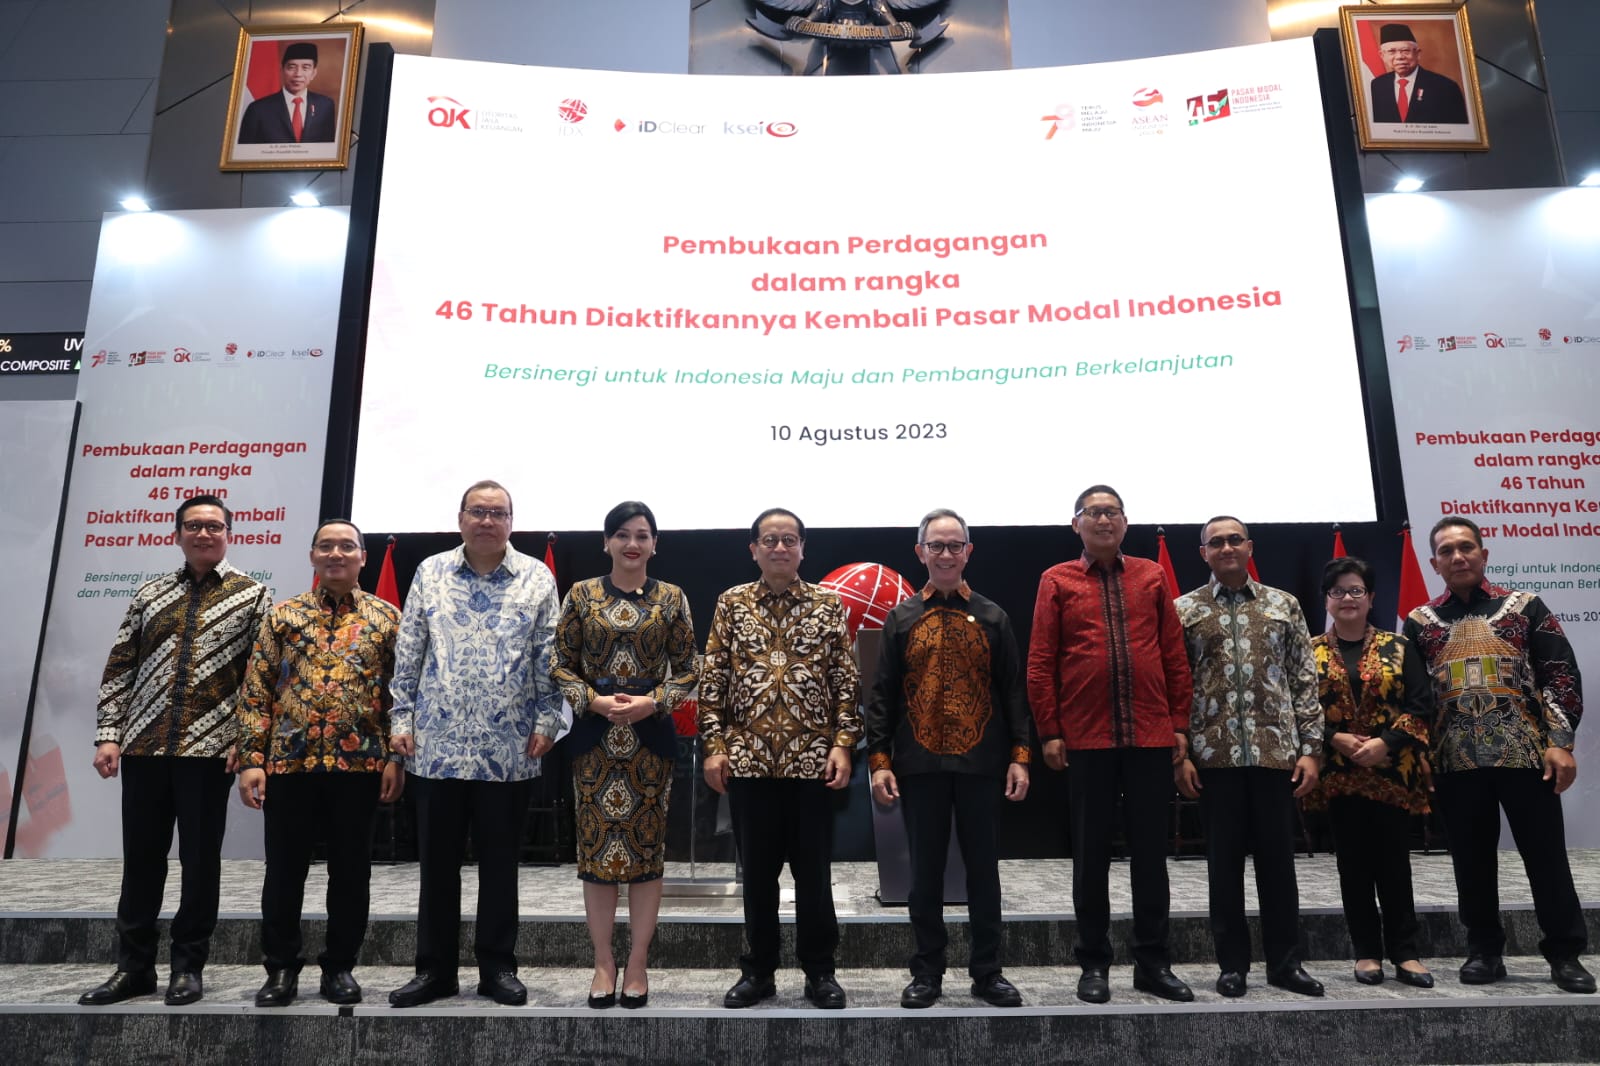 Bersinergi untuk Indonesia Maju dan Pembangunan Berkelanjutan